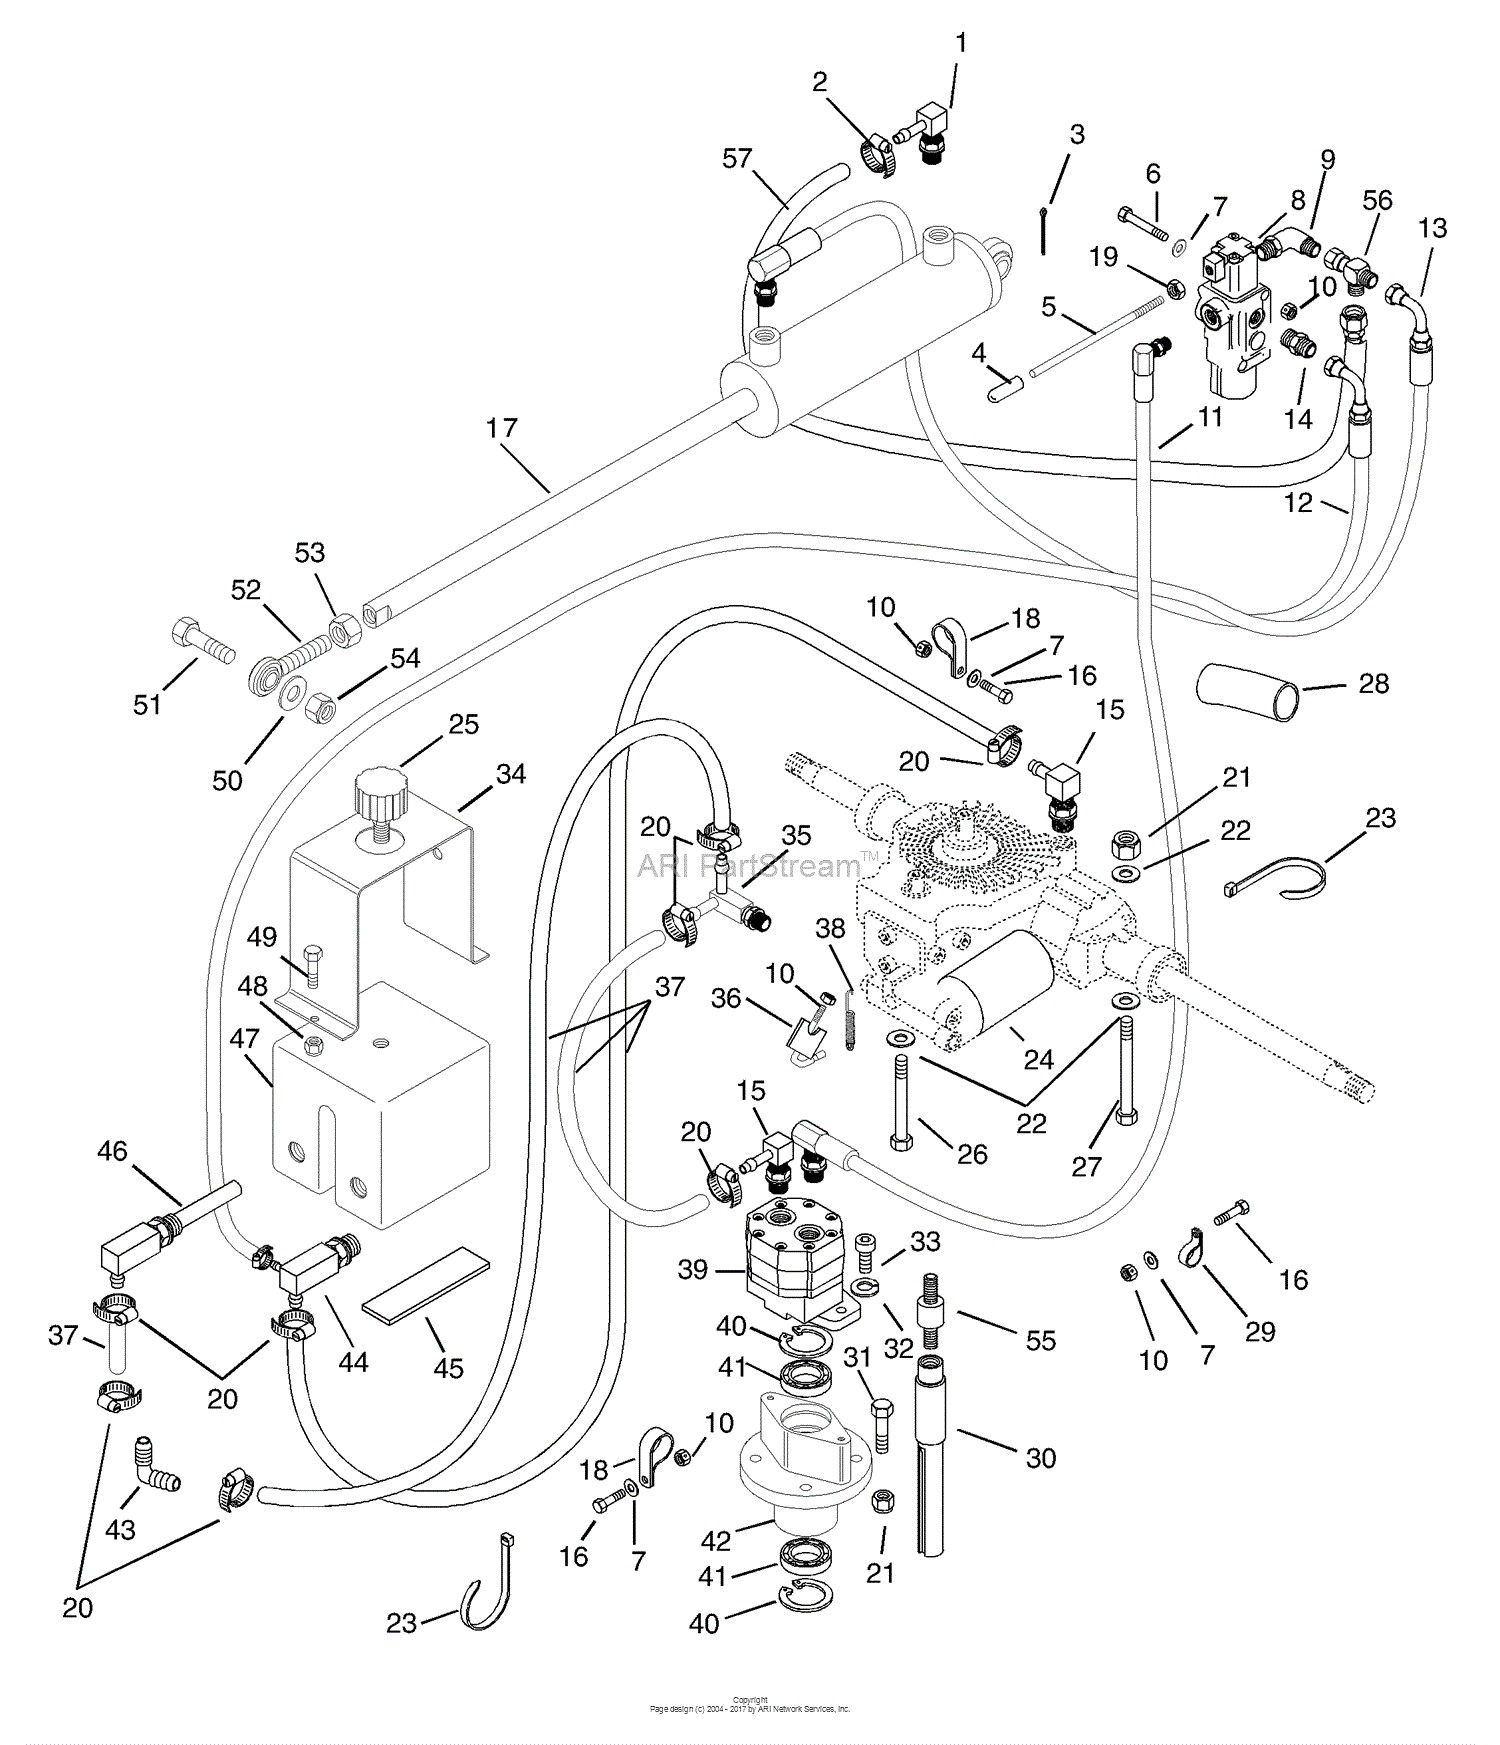 Kawasaki Small Engine Parts Diagram Gravely Pm310 21hp B & S Parts Diagram for Of Kawasaki Small Engine Parts Diagram